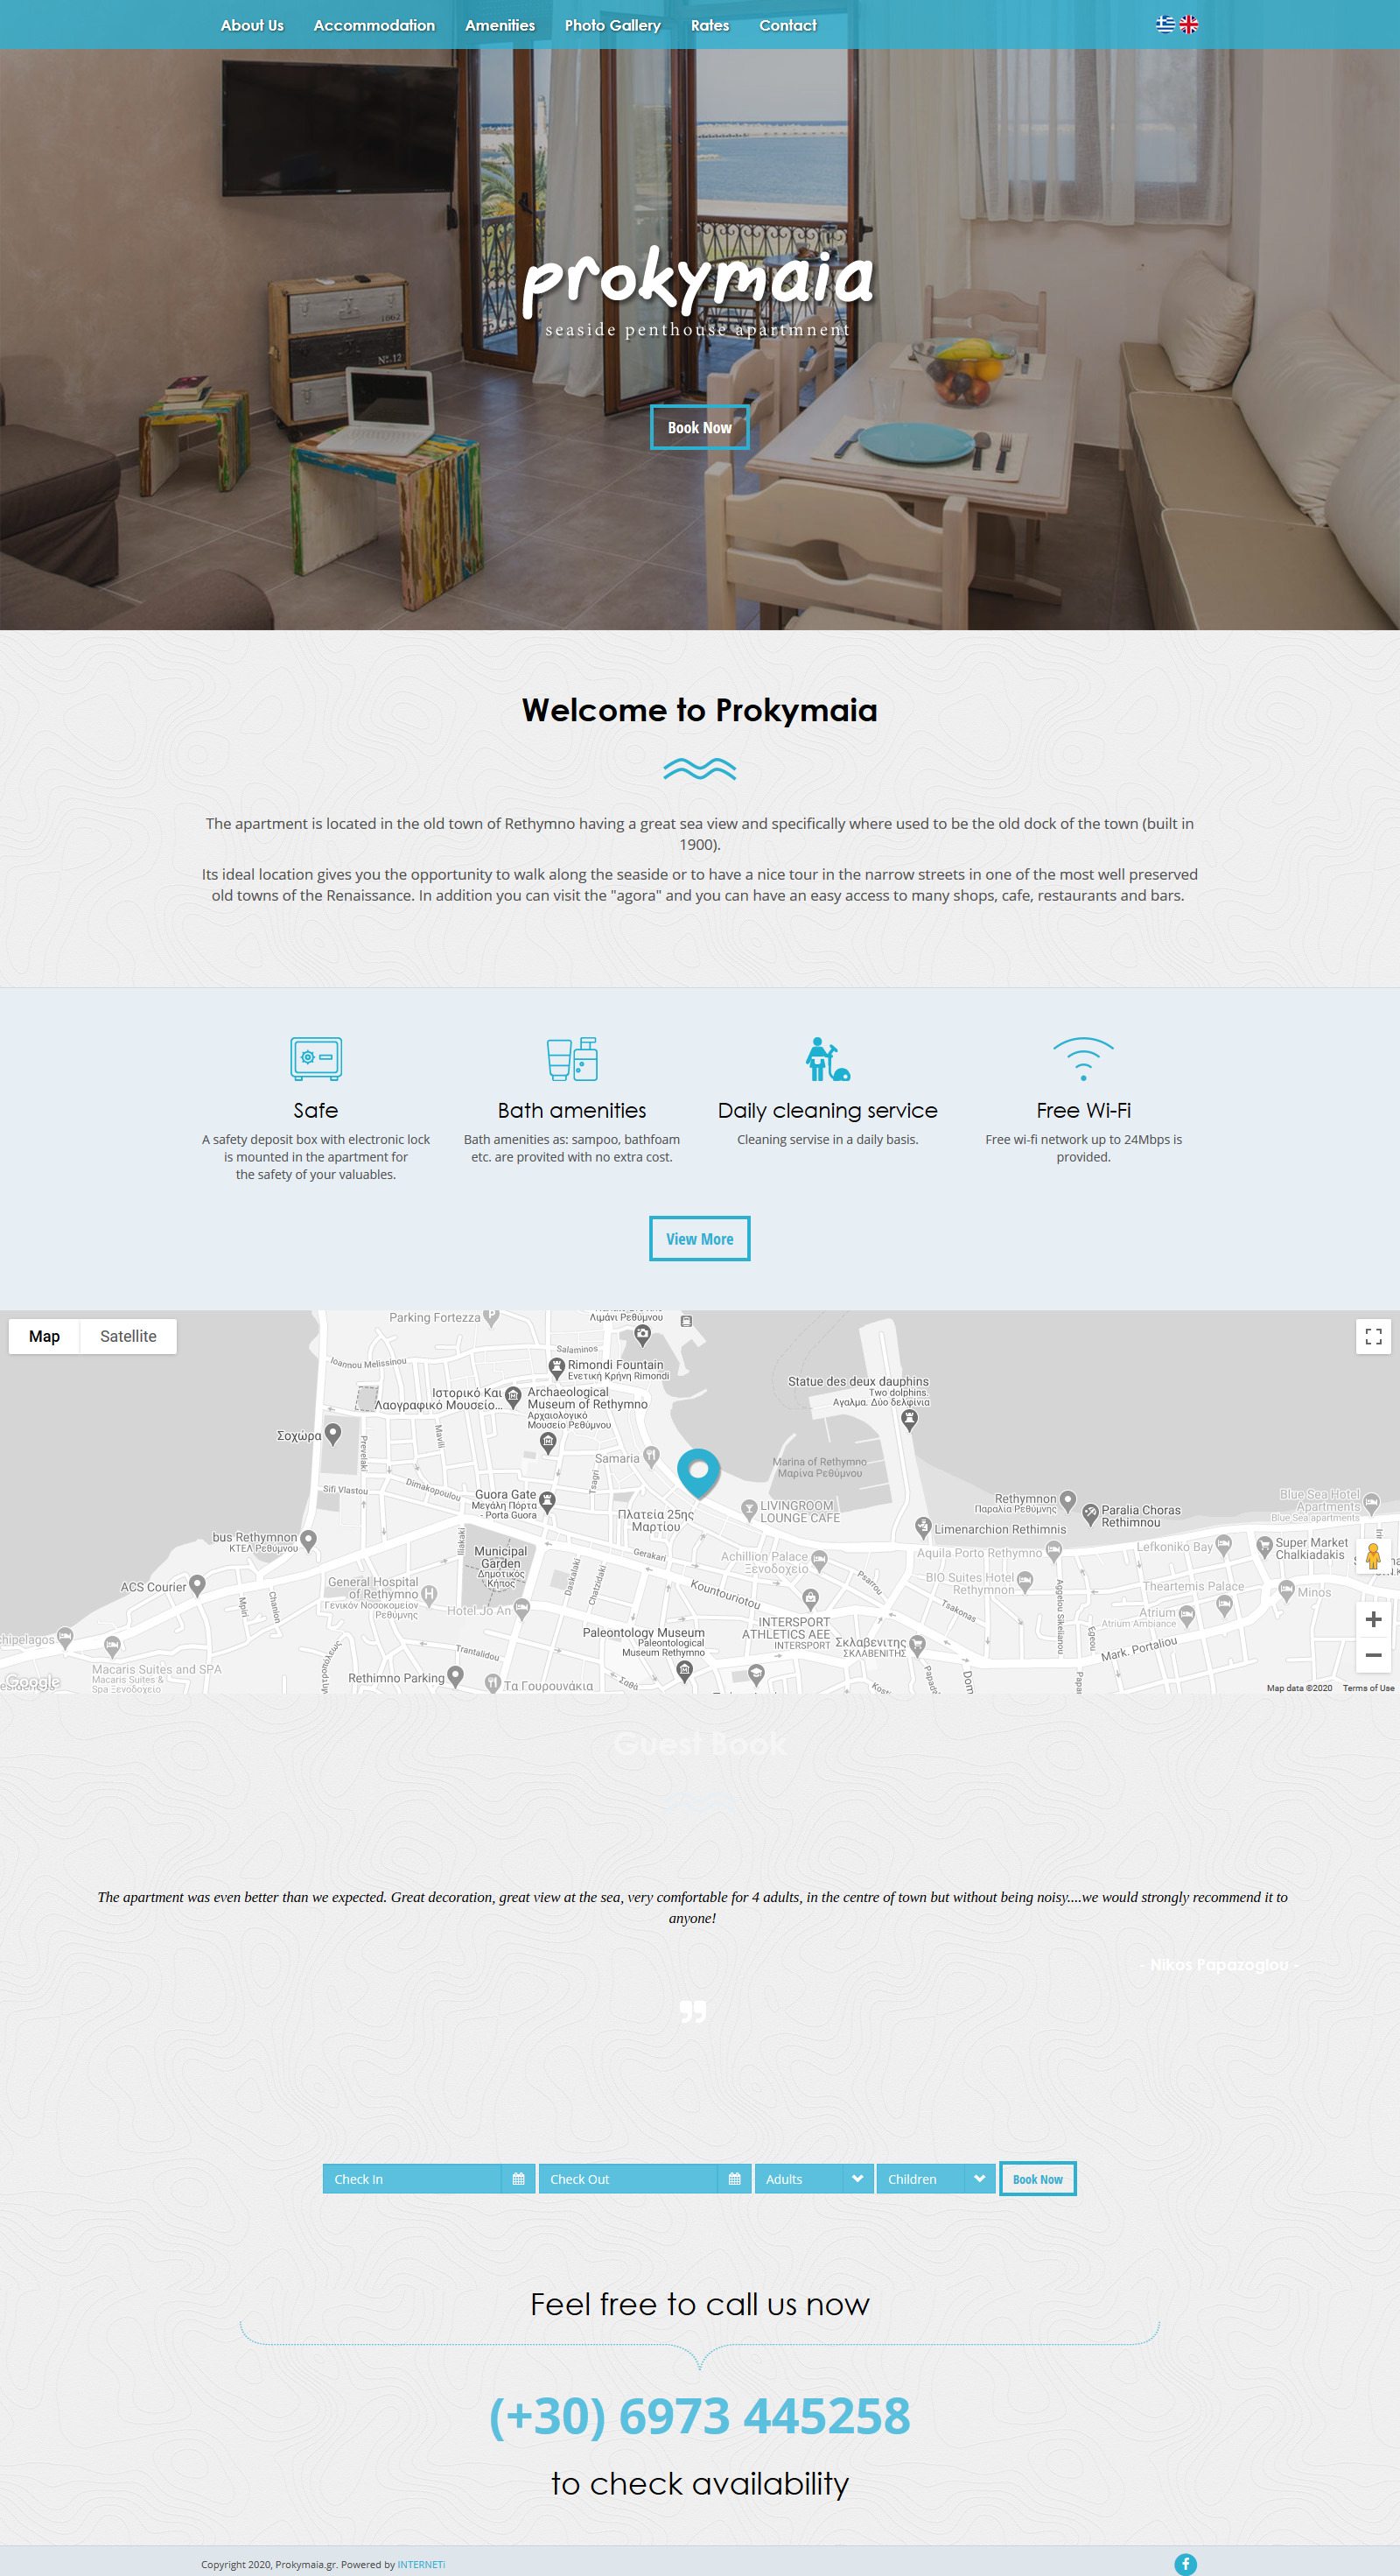 Κατασκευή ιστοσελίδων εταιρική παρουσίαση Ξενοδοχείο Προκυμαία